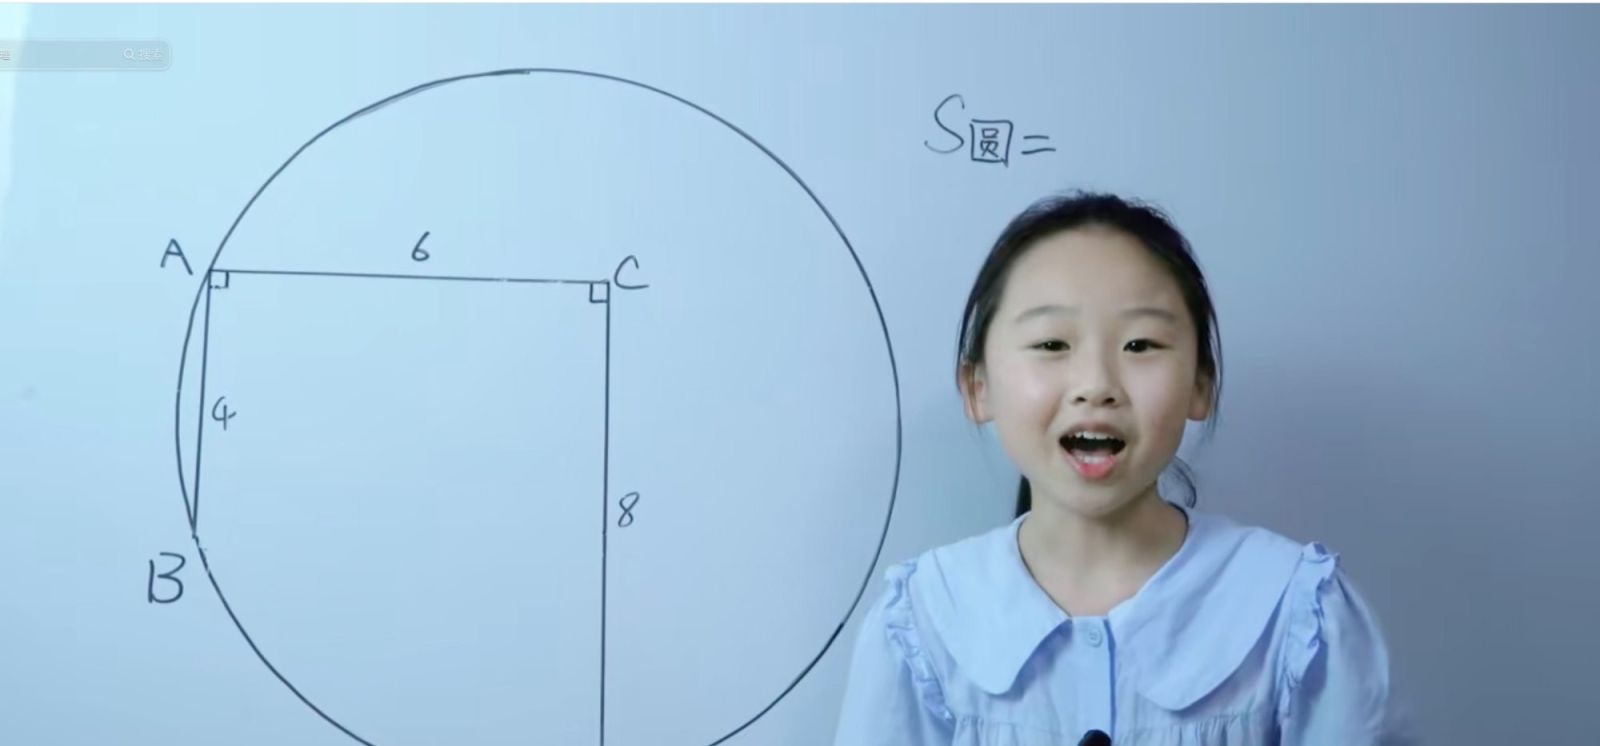 Mở lớp dạy toán đại học trực tuyến, bé gái 12 tuổi được phong thần đồng